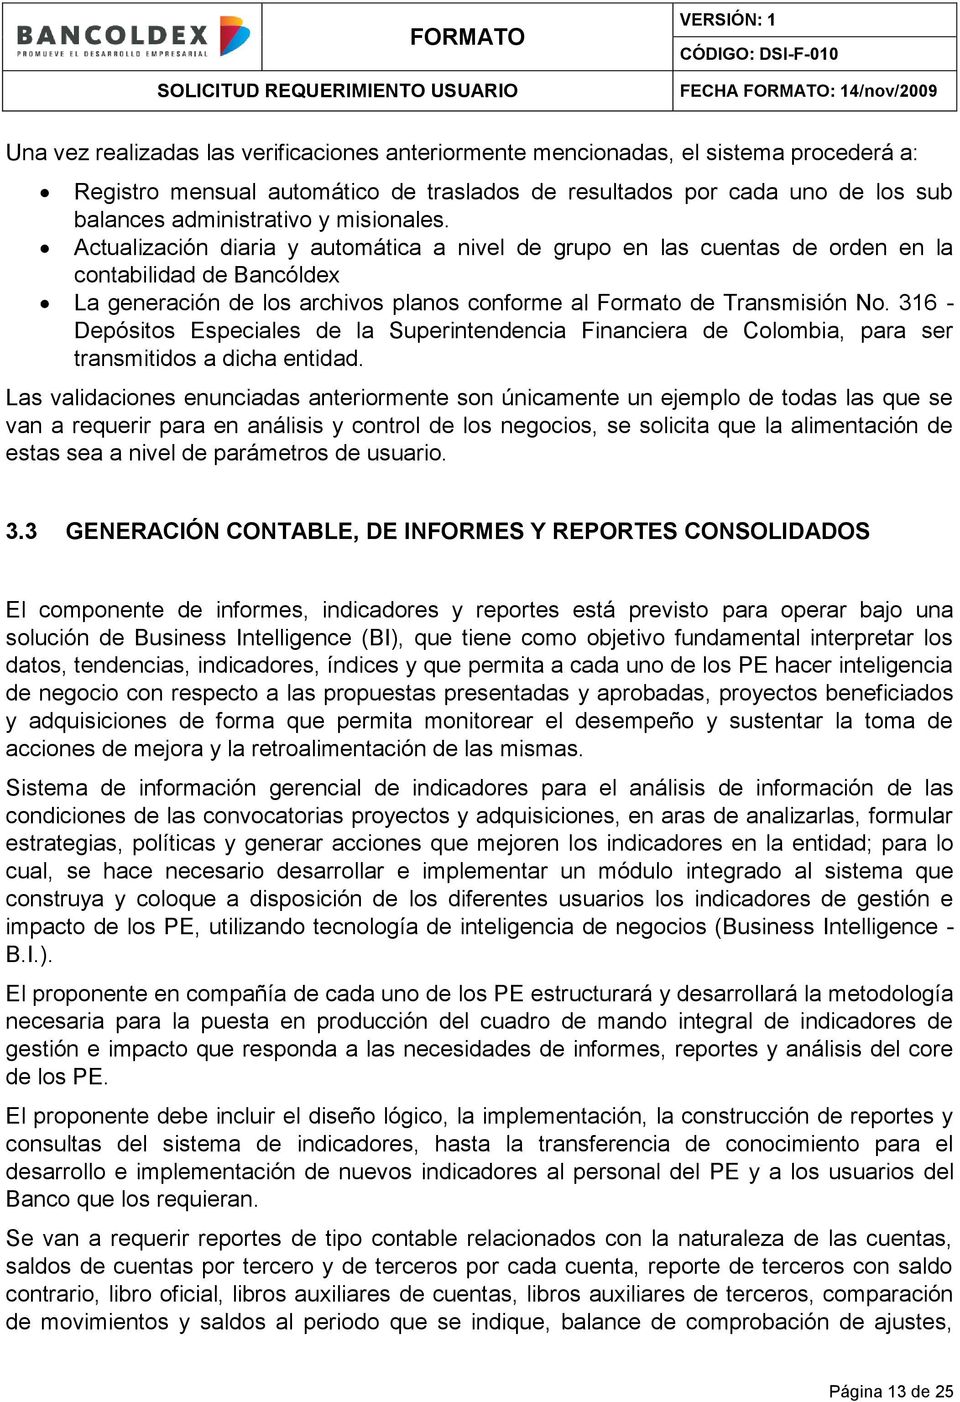 316 - Depósitos Especiales de la Superintendencia Financiera de Colombia, para ser transmitidos a dicha entidad.